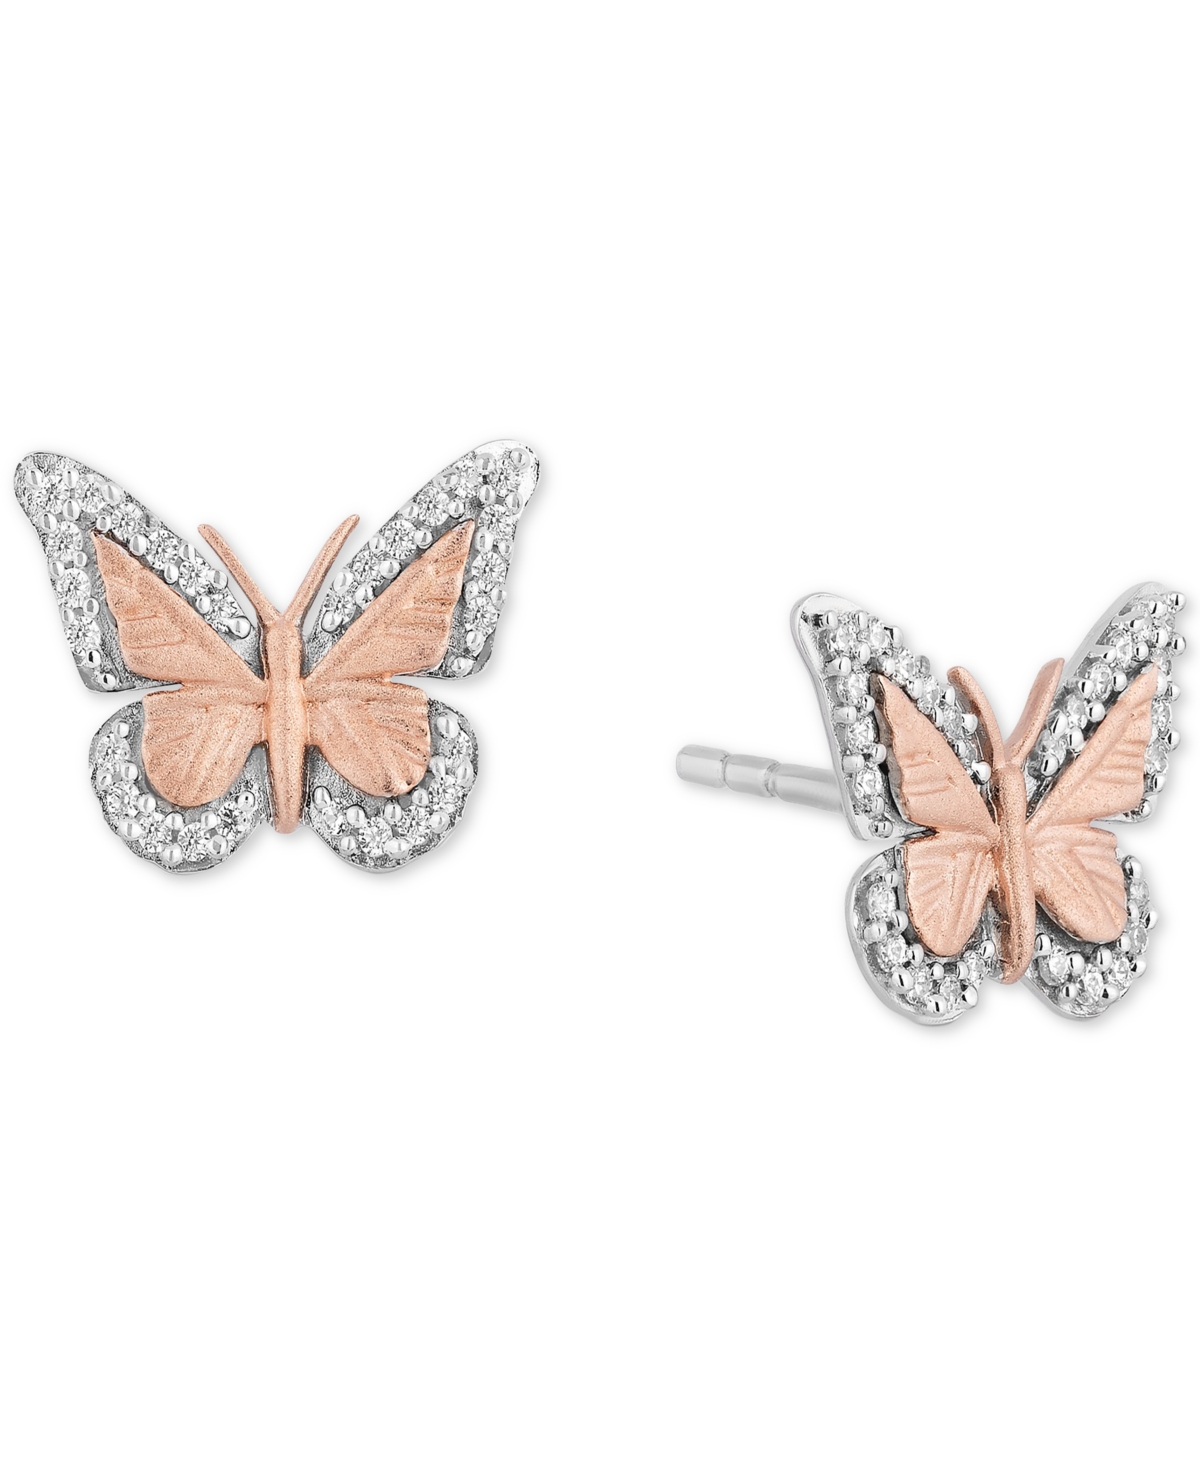 Enchanted Disney Fine Jewelry Diamond Butterfly Stud Earrings (1/7 ct. t.w.) in Sterling Silver & 14k Rose Gold